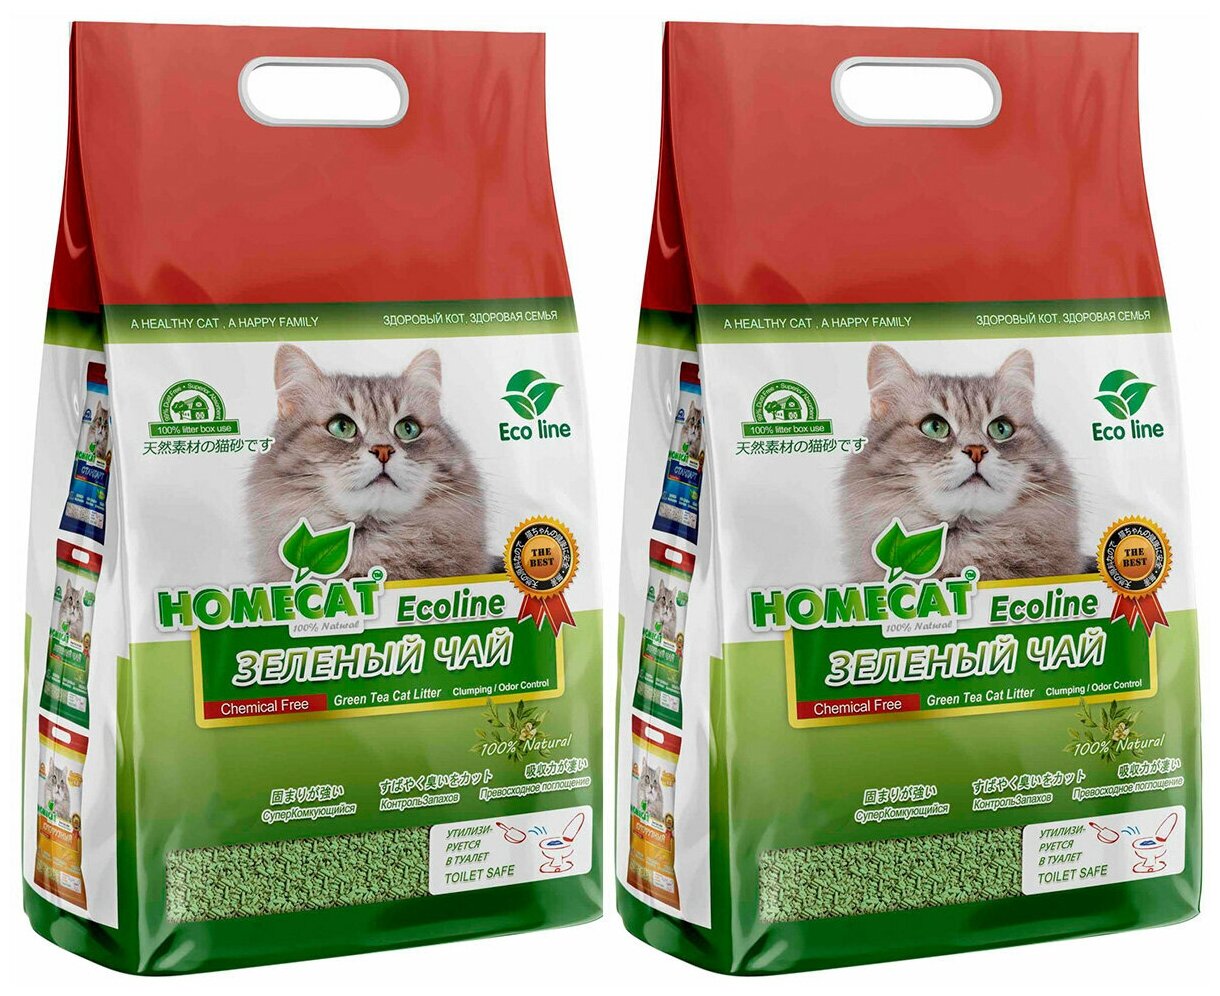 HOMECAT эколайн зеленый ЧАЙ наполнитель комкующийся для туалета кошек (18 + 18 л)